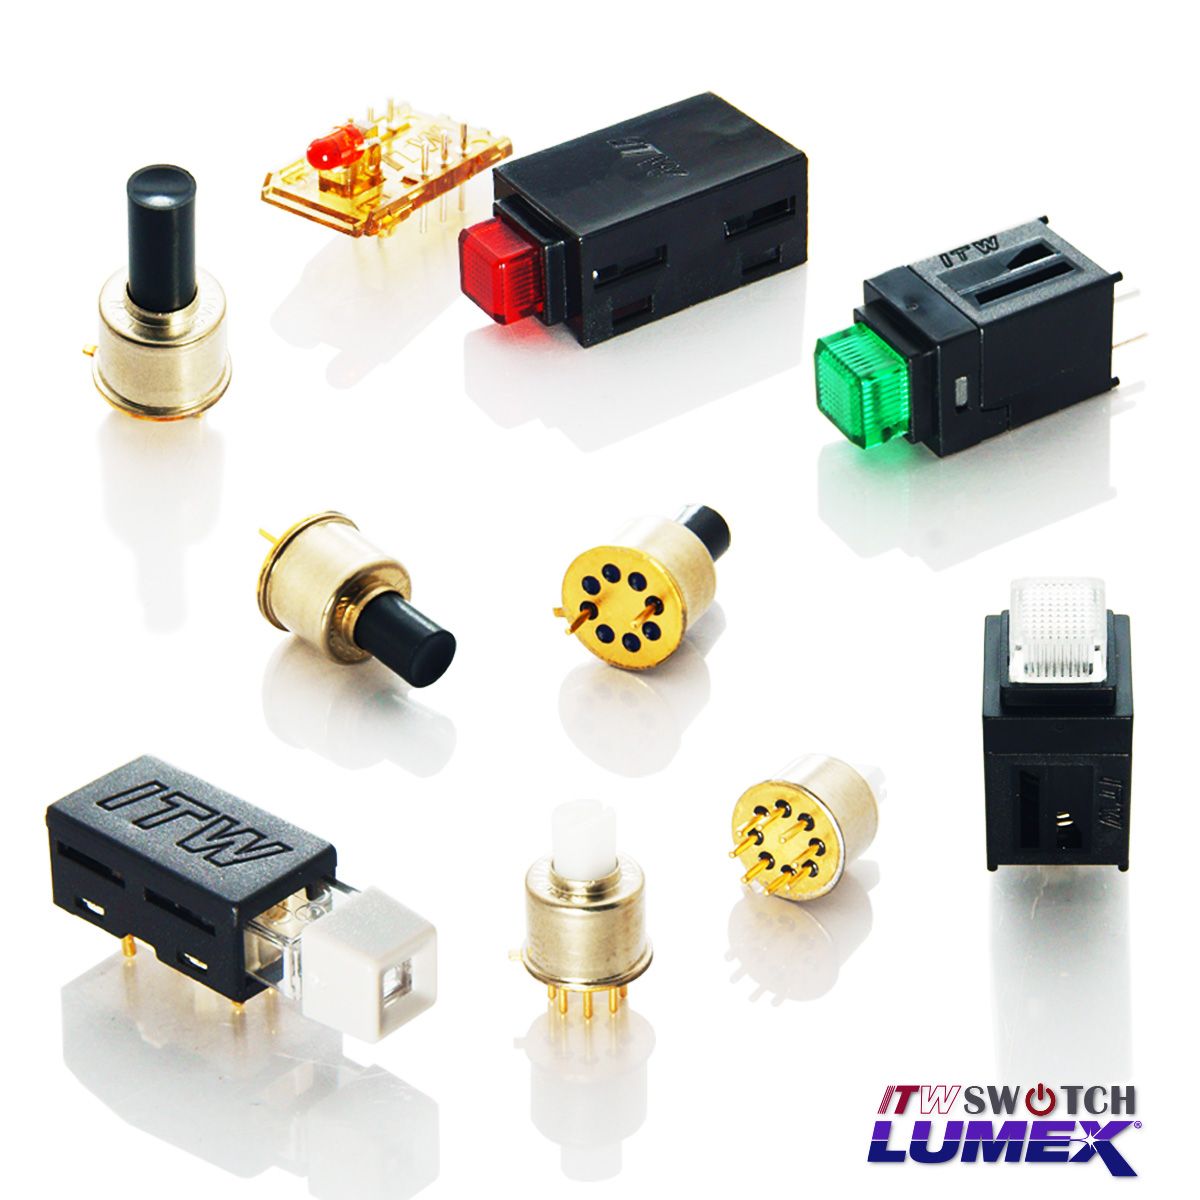 ITW Lumex Switchfornisce interruttori a pulsante miniaturizzati illuminati a LED per applicazioni PCBA.